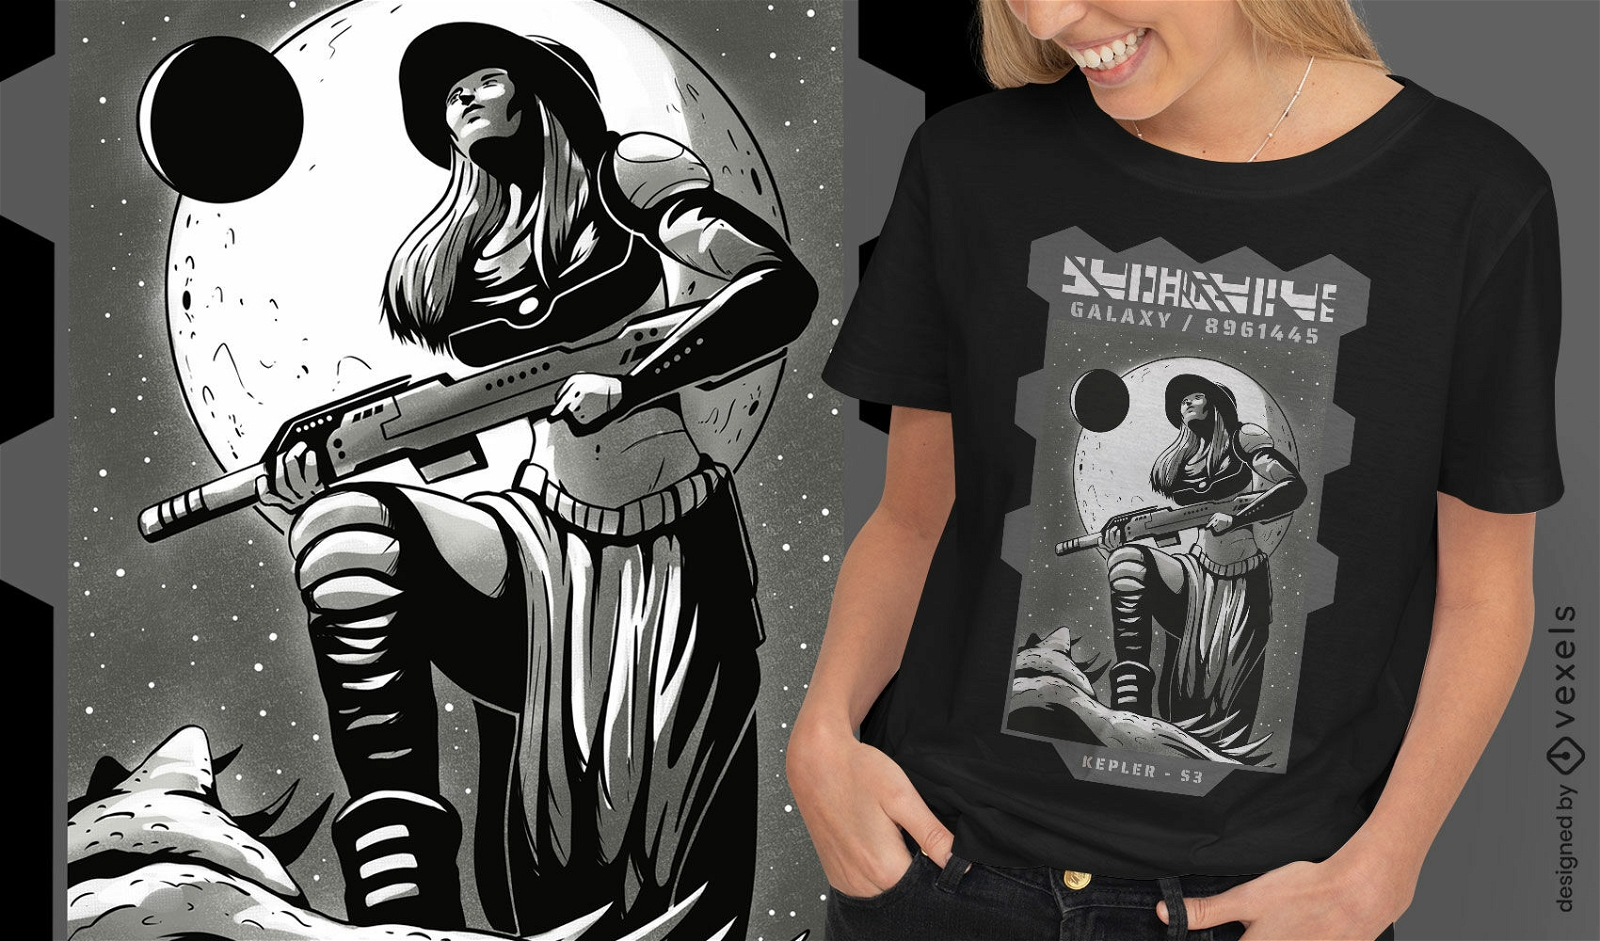 Space warrior t-shirt design